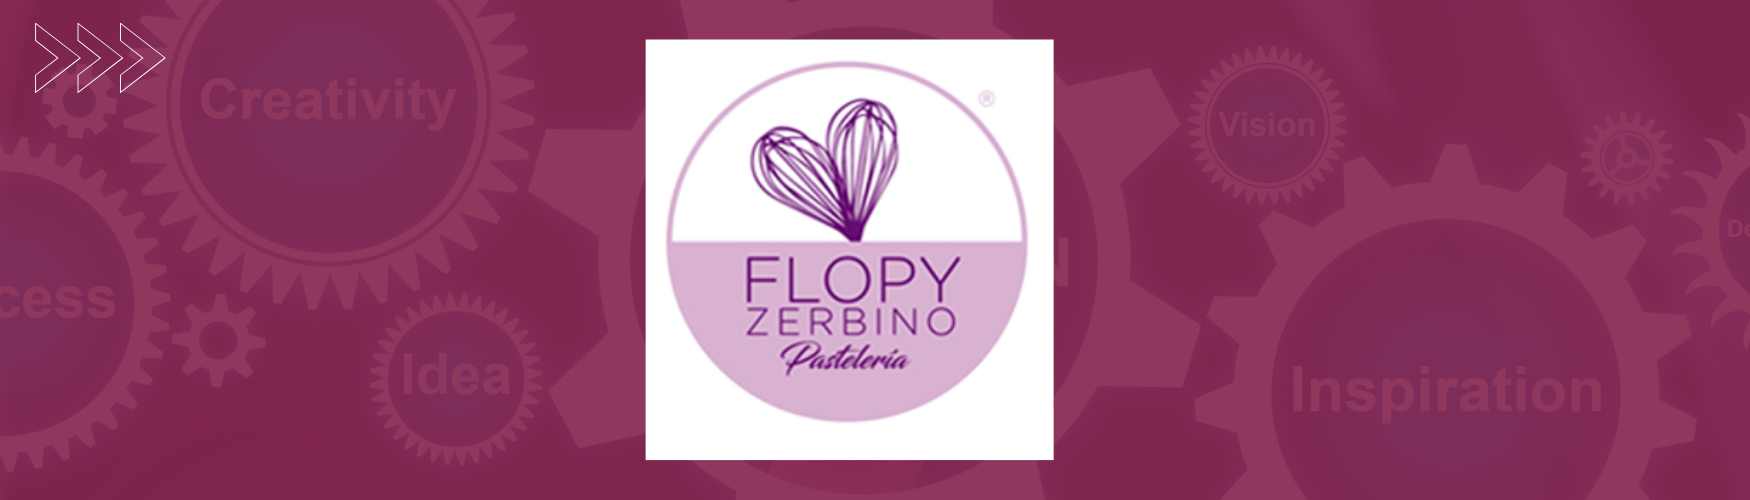 Flopy Zerbino